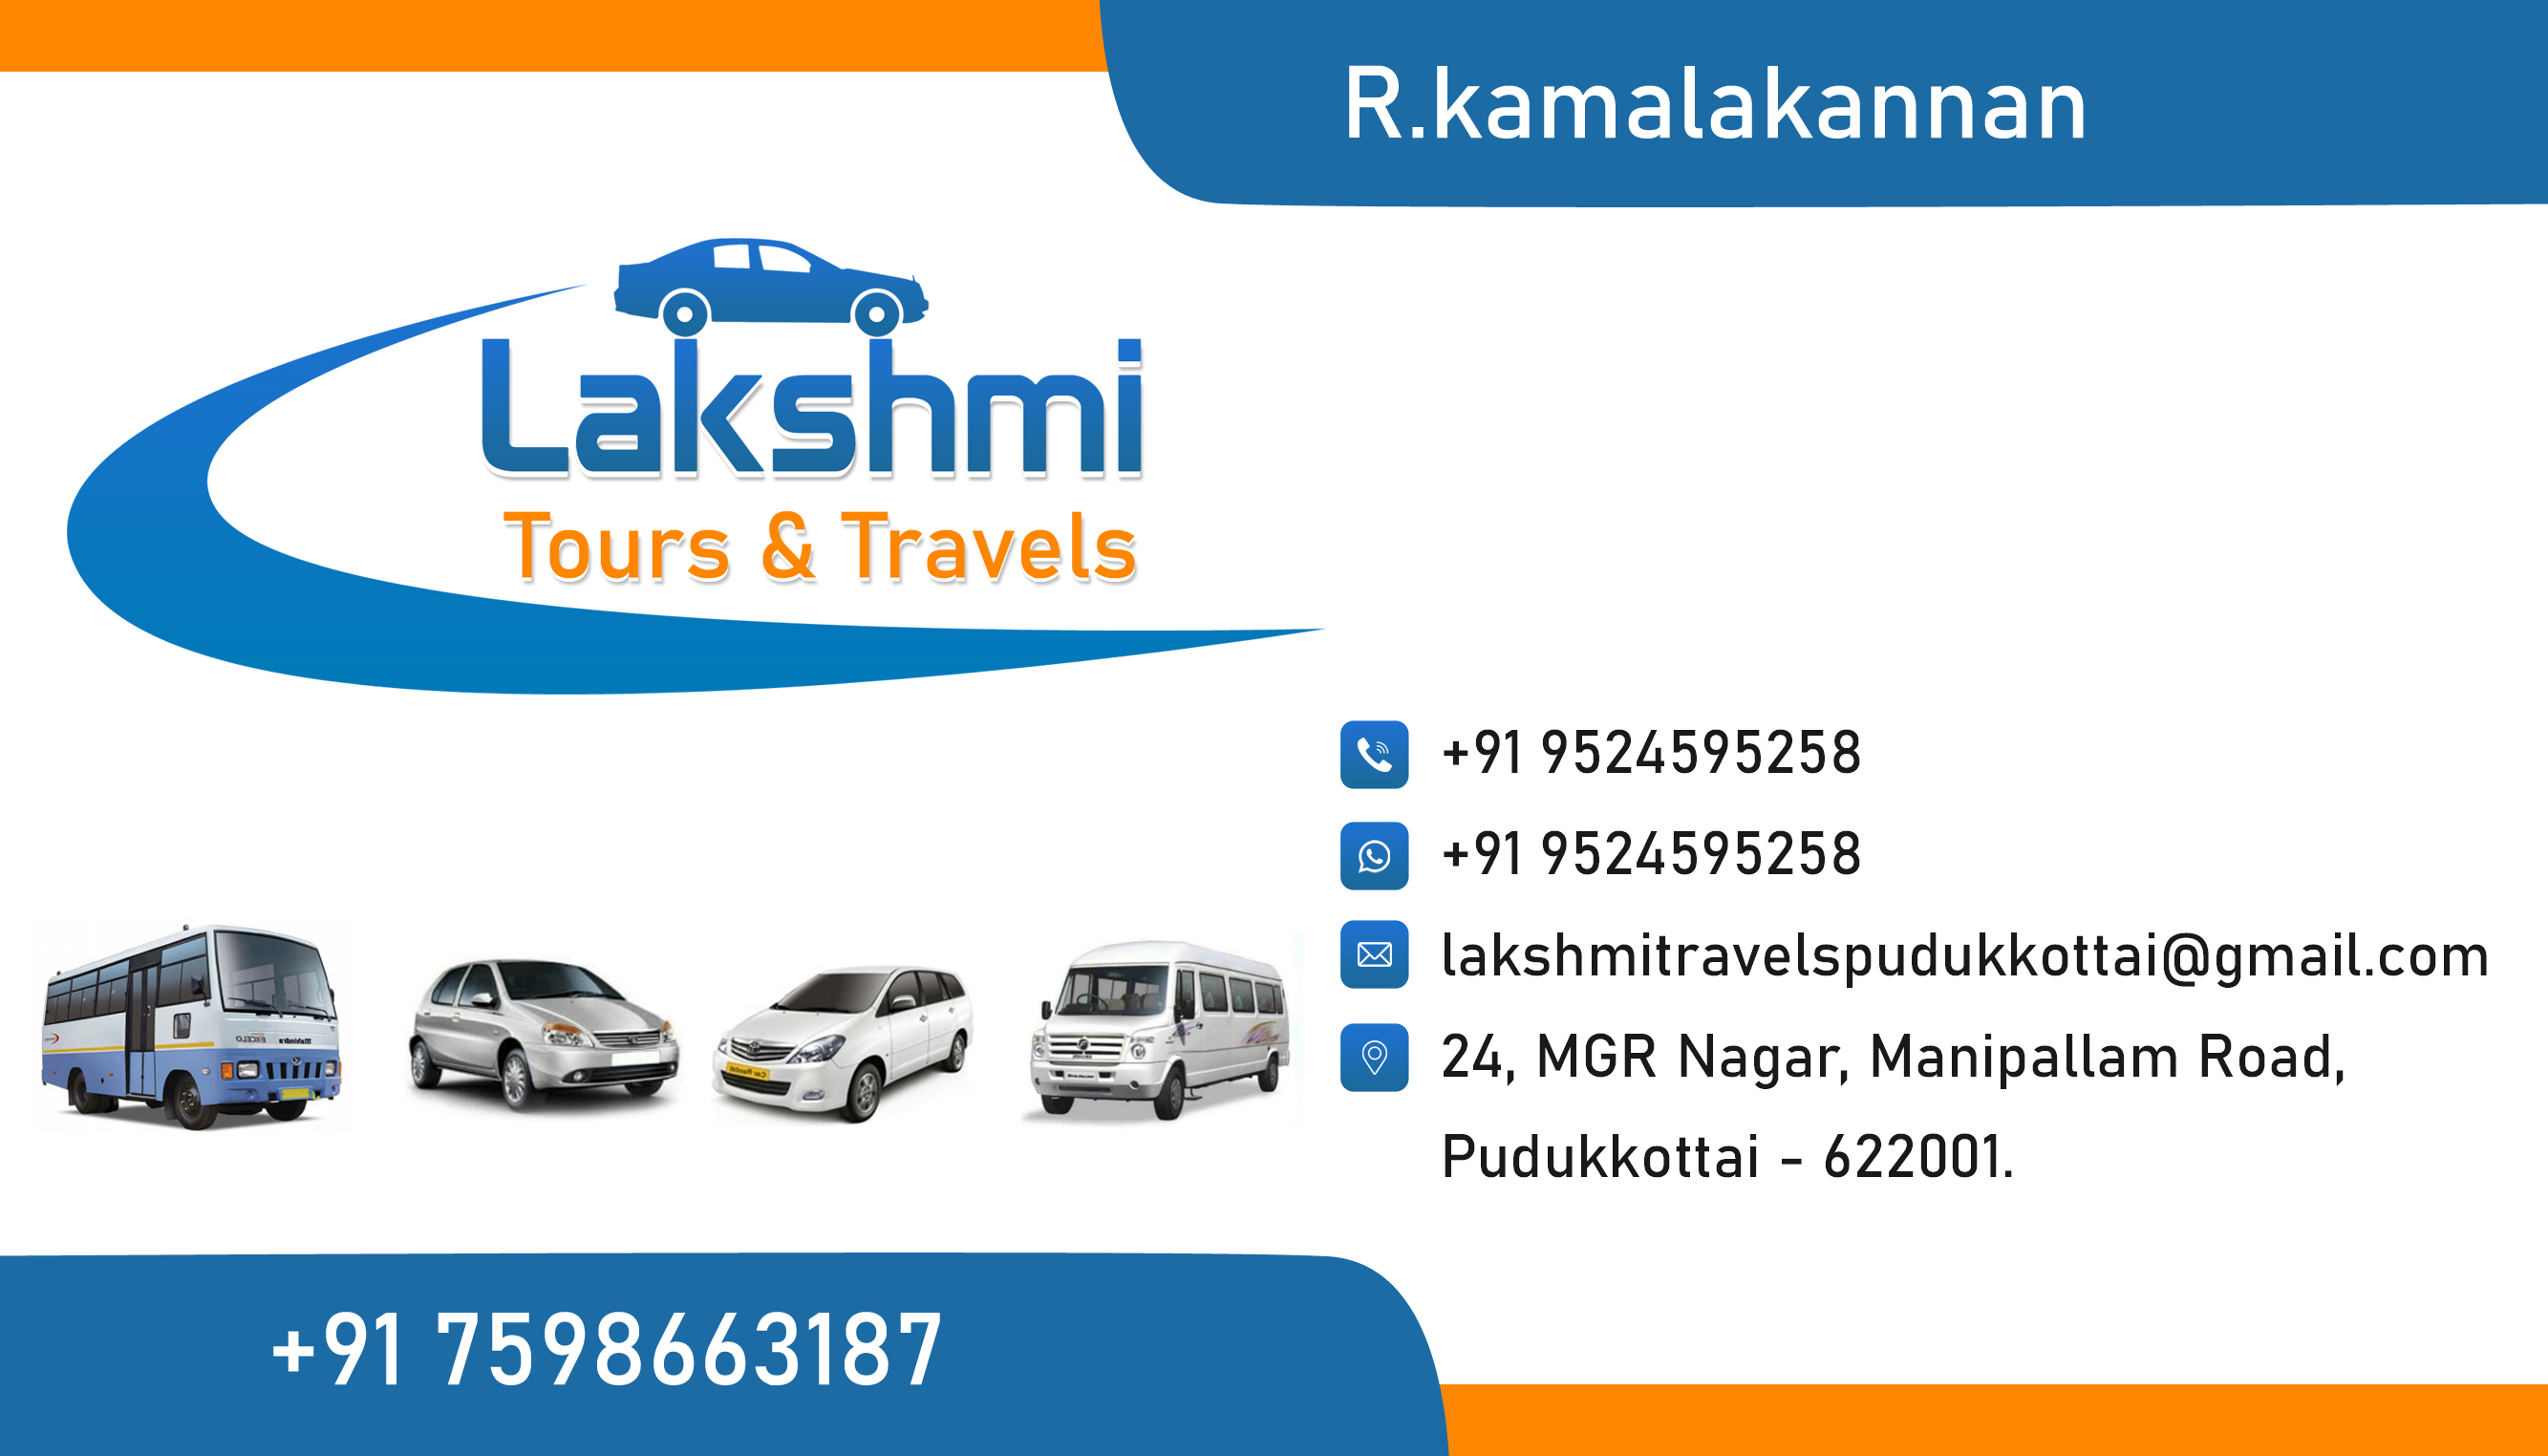 Lakshmi Tours and Travels Pudukkottai